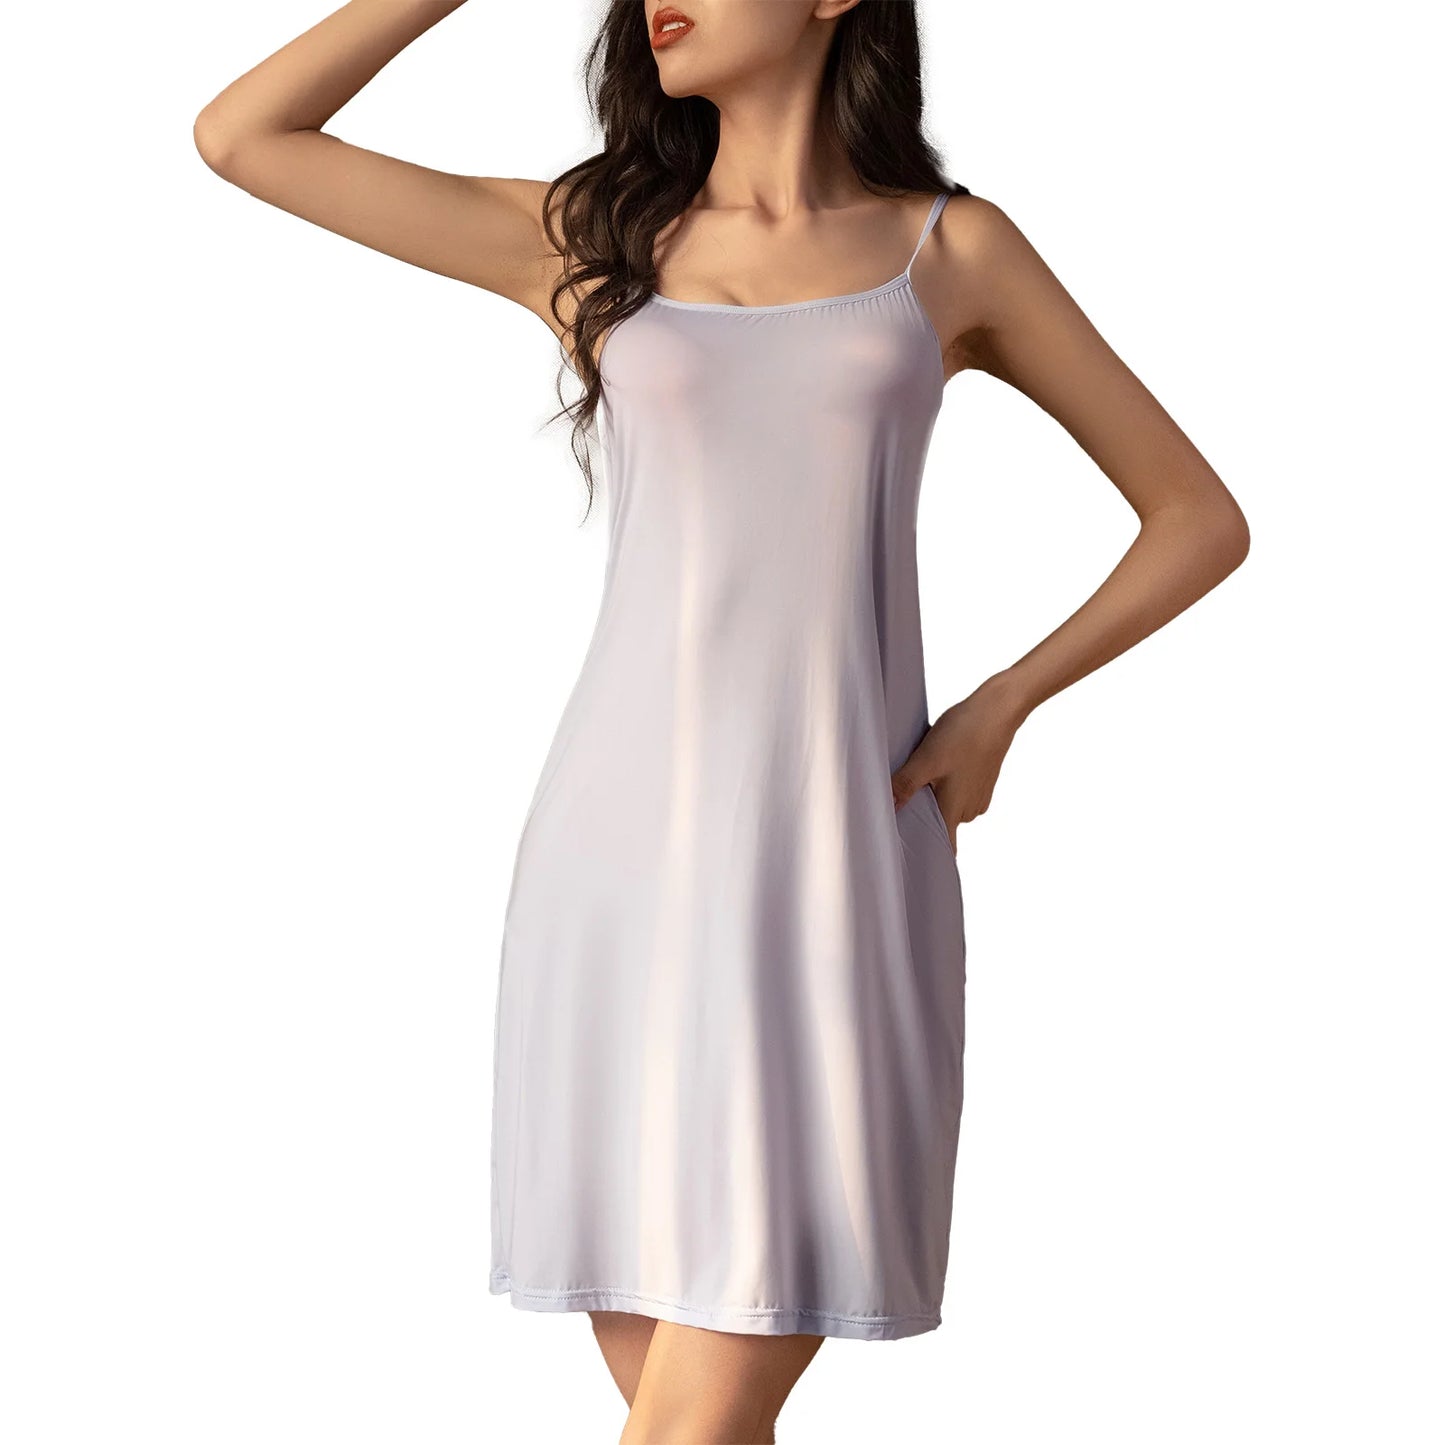 Womens Adjustable Spaghetti Strap Dress Sleepwear Homewear Loungewear Solid Color Sleeveless Nightdress Nightgown Nightwear